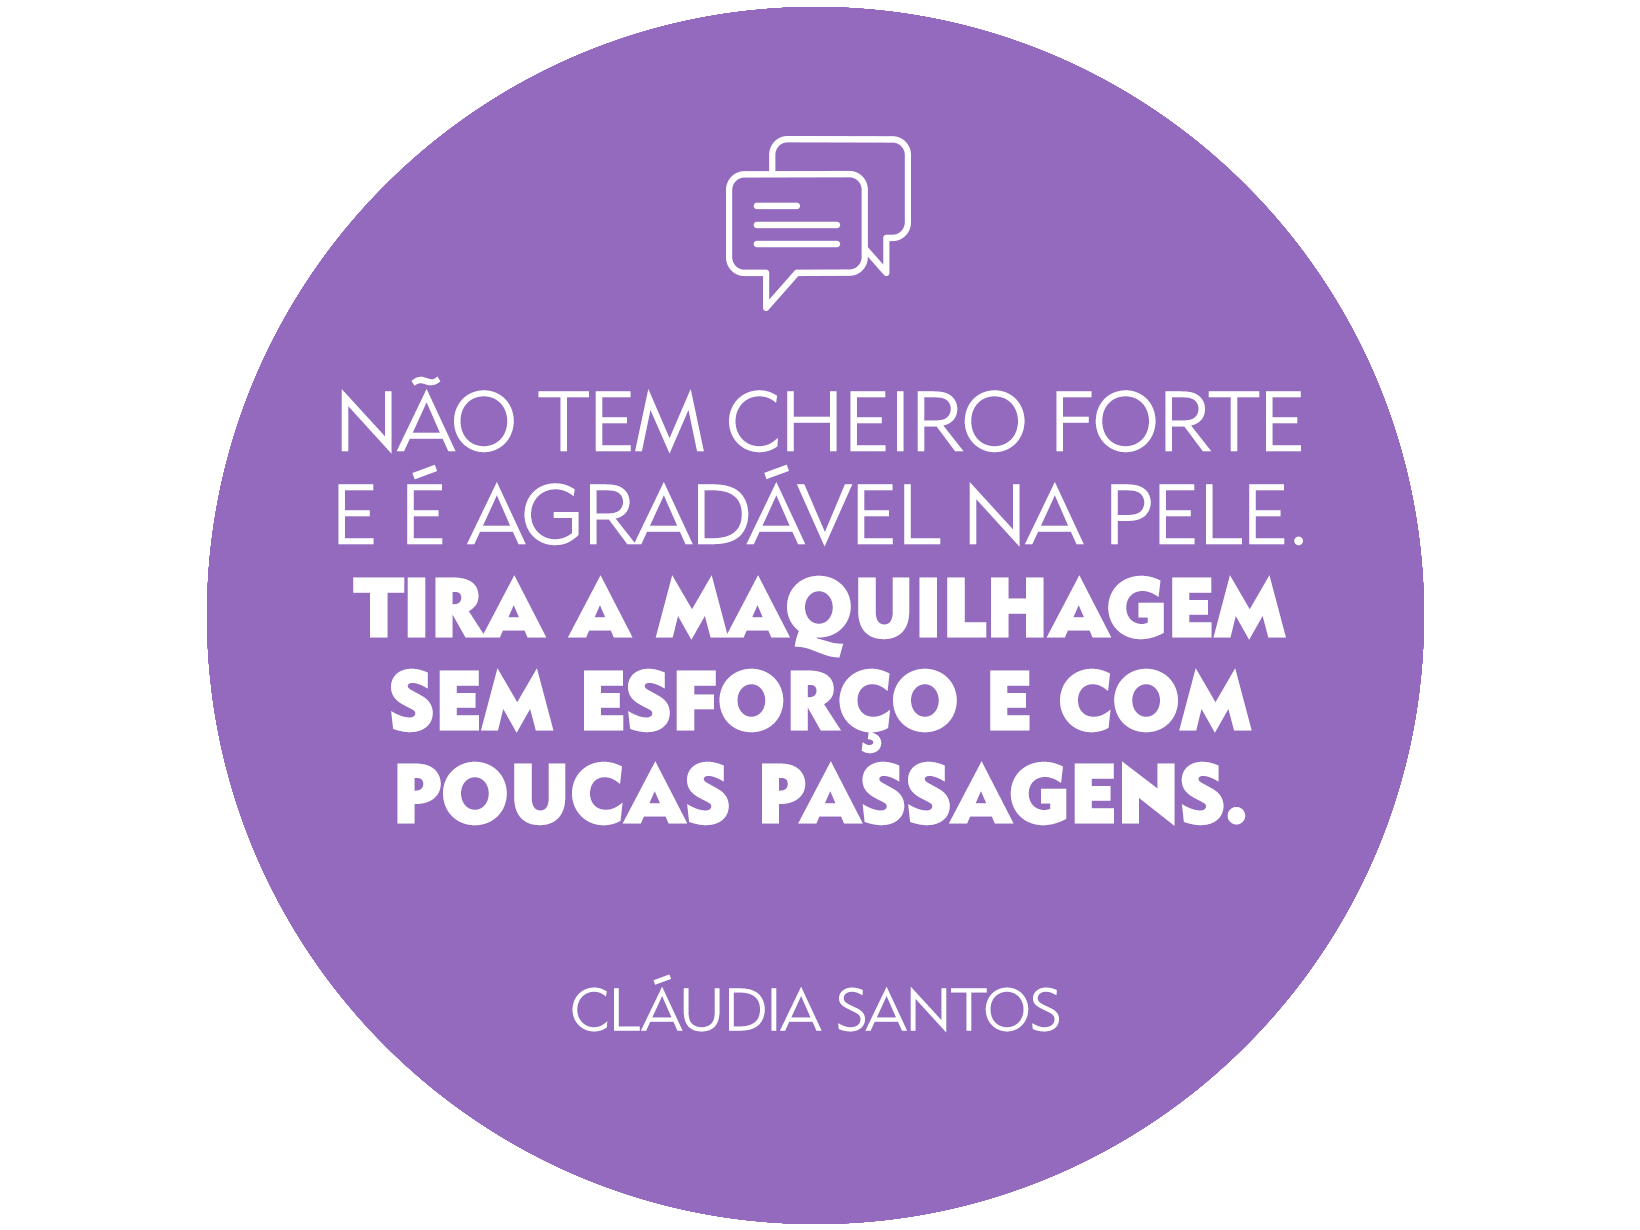 Review Cláudia Santos